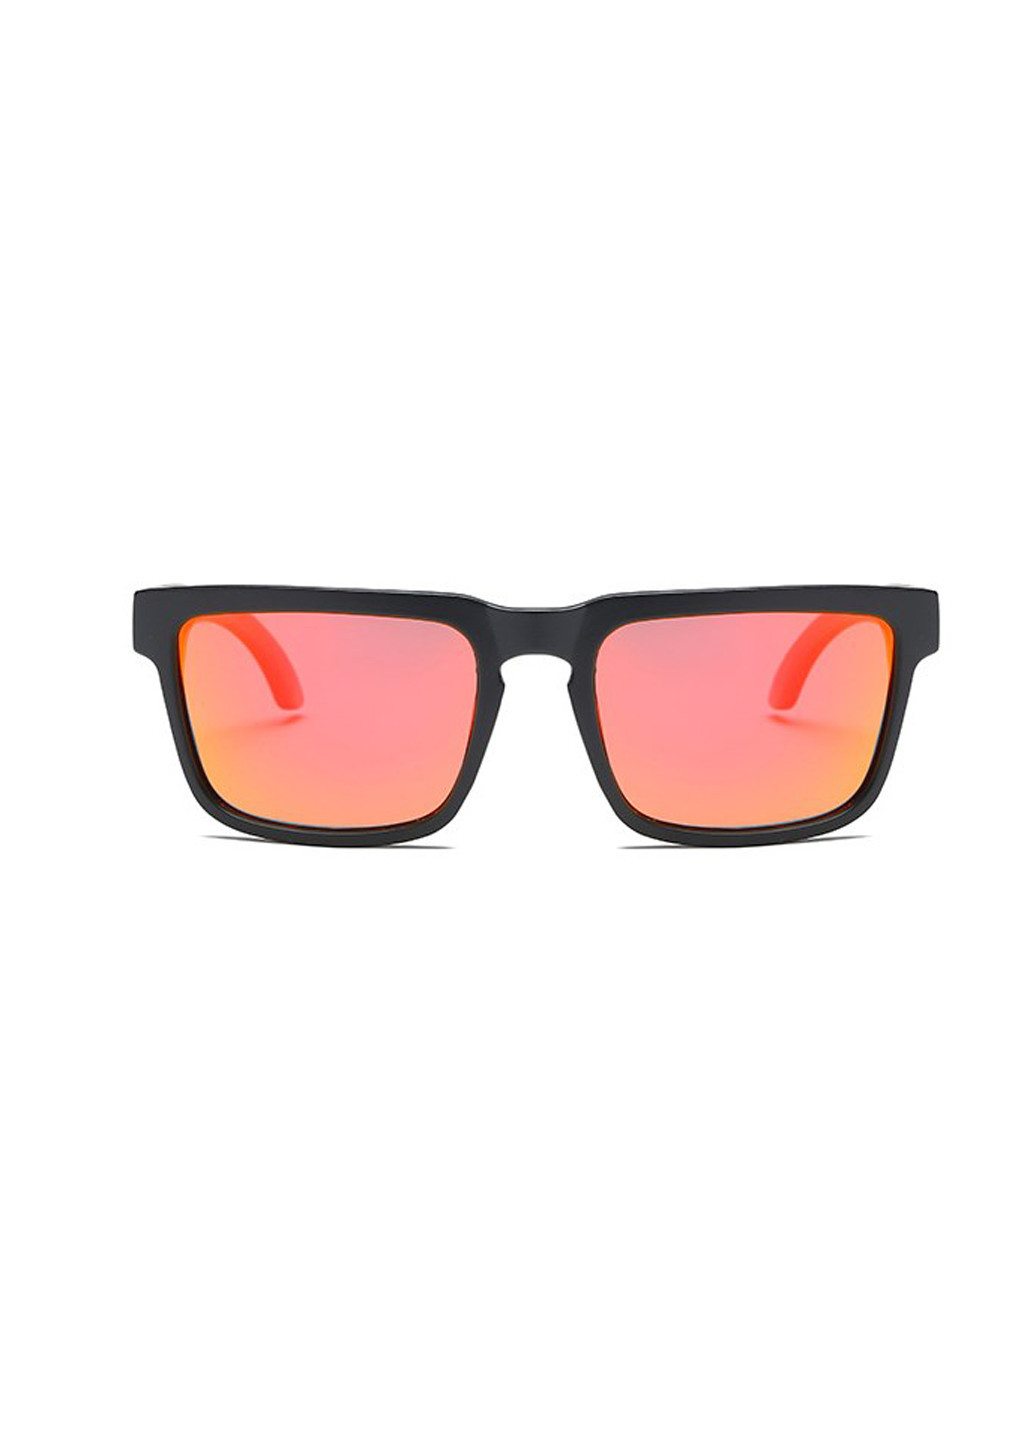 Солнцезащитные очки Dubery оранжевые